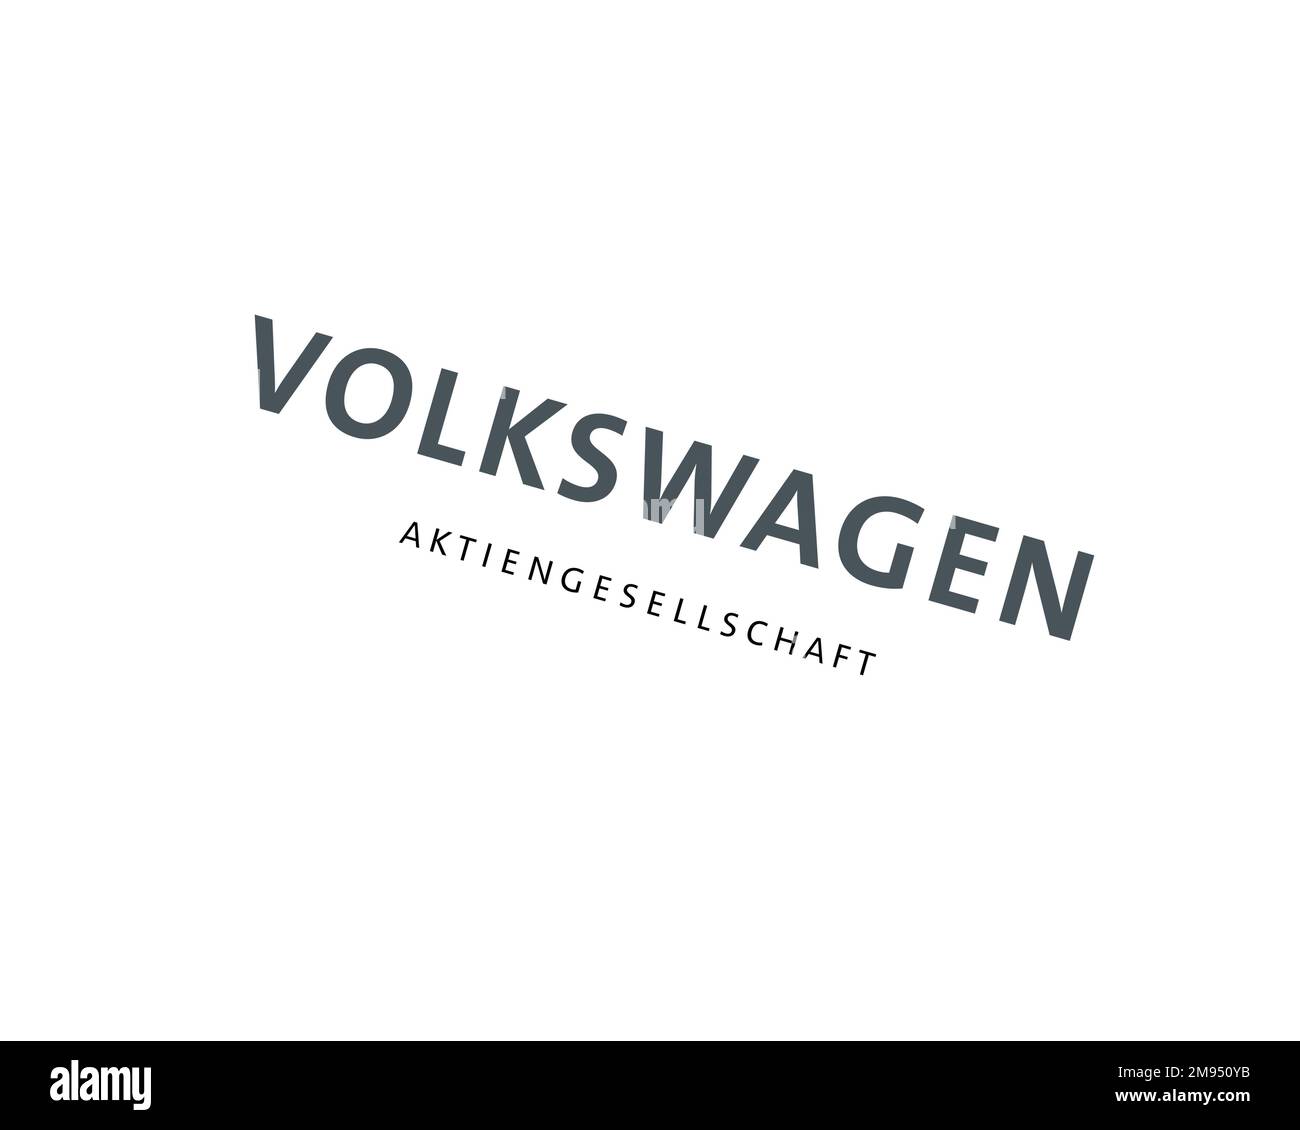 Volkswagen Group, logo pivoté, fond blanc B Banque D'Images